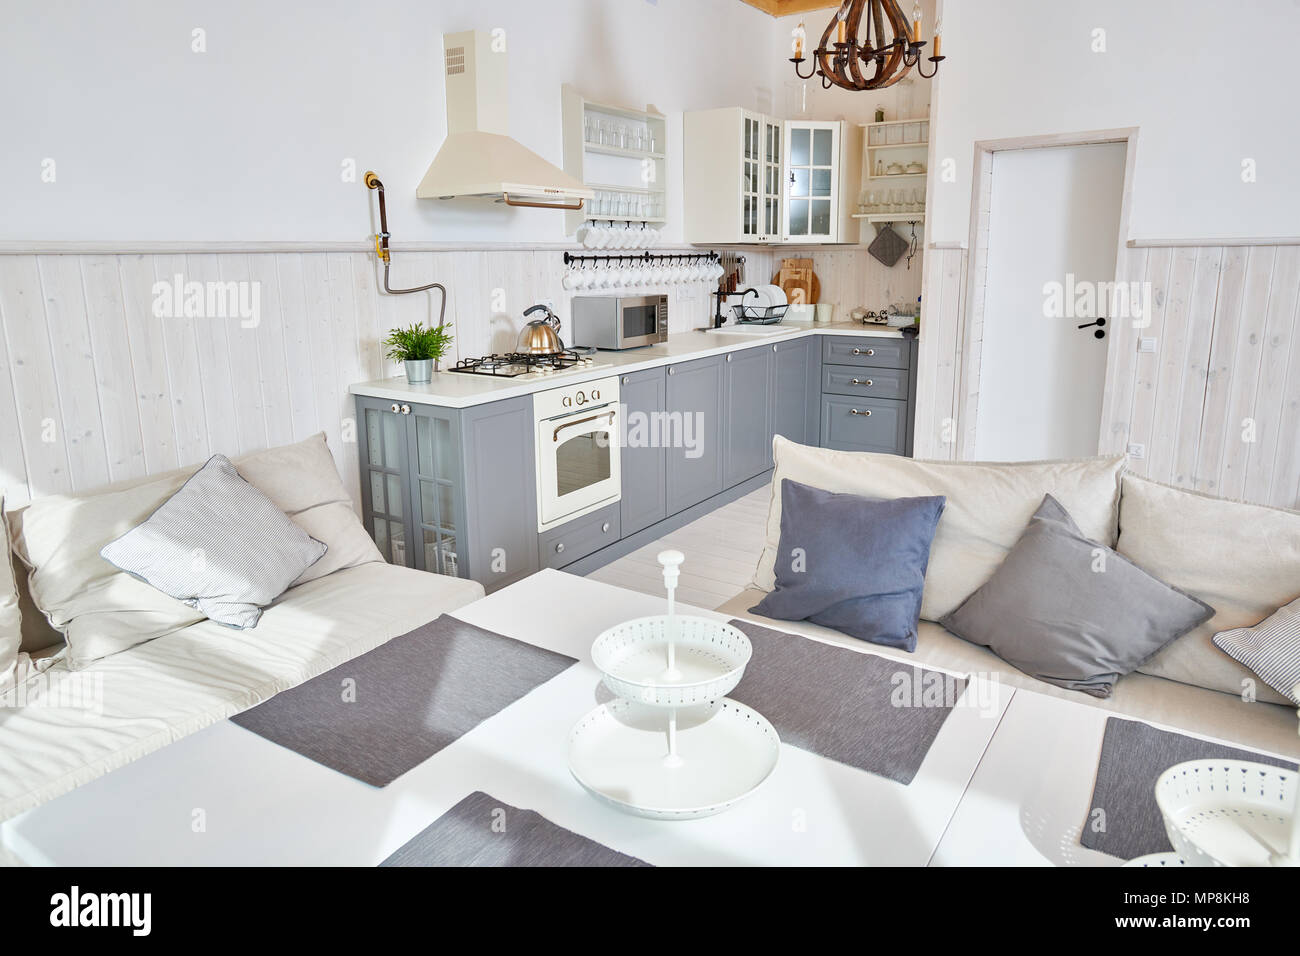 Offene Küche Einrichtung mit weißen Möbeln und grau Küche Zähler in minimalistischen skandinavischen Design durch Sonnenlicht, Kopie Raum beleuchtet, niemand Stockfoto